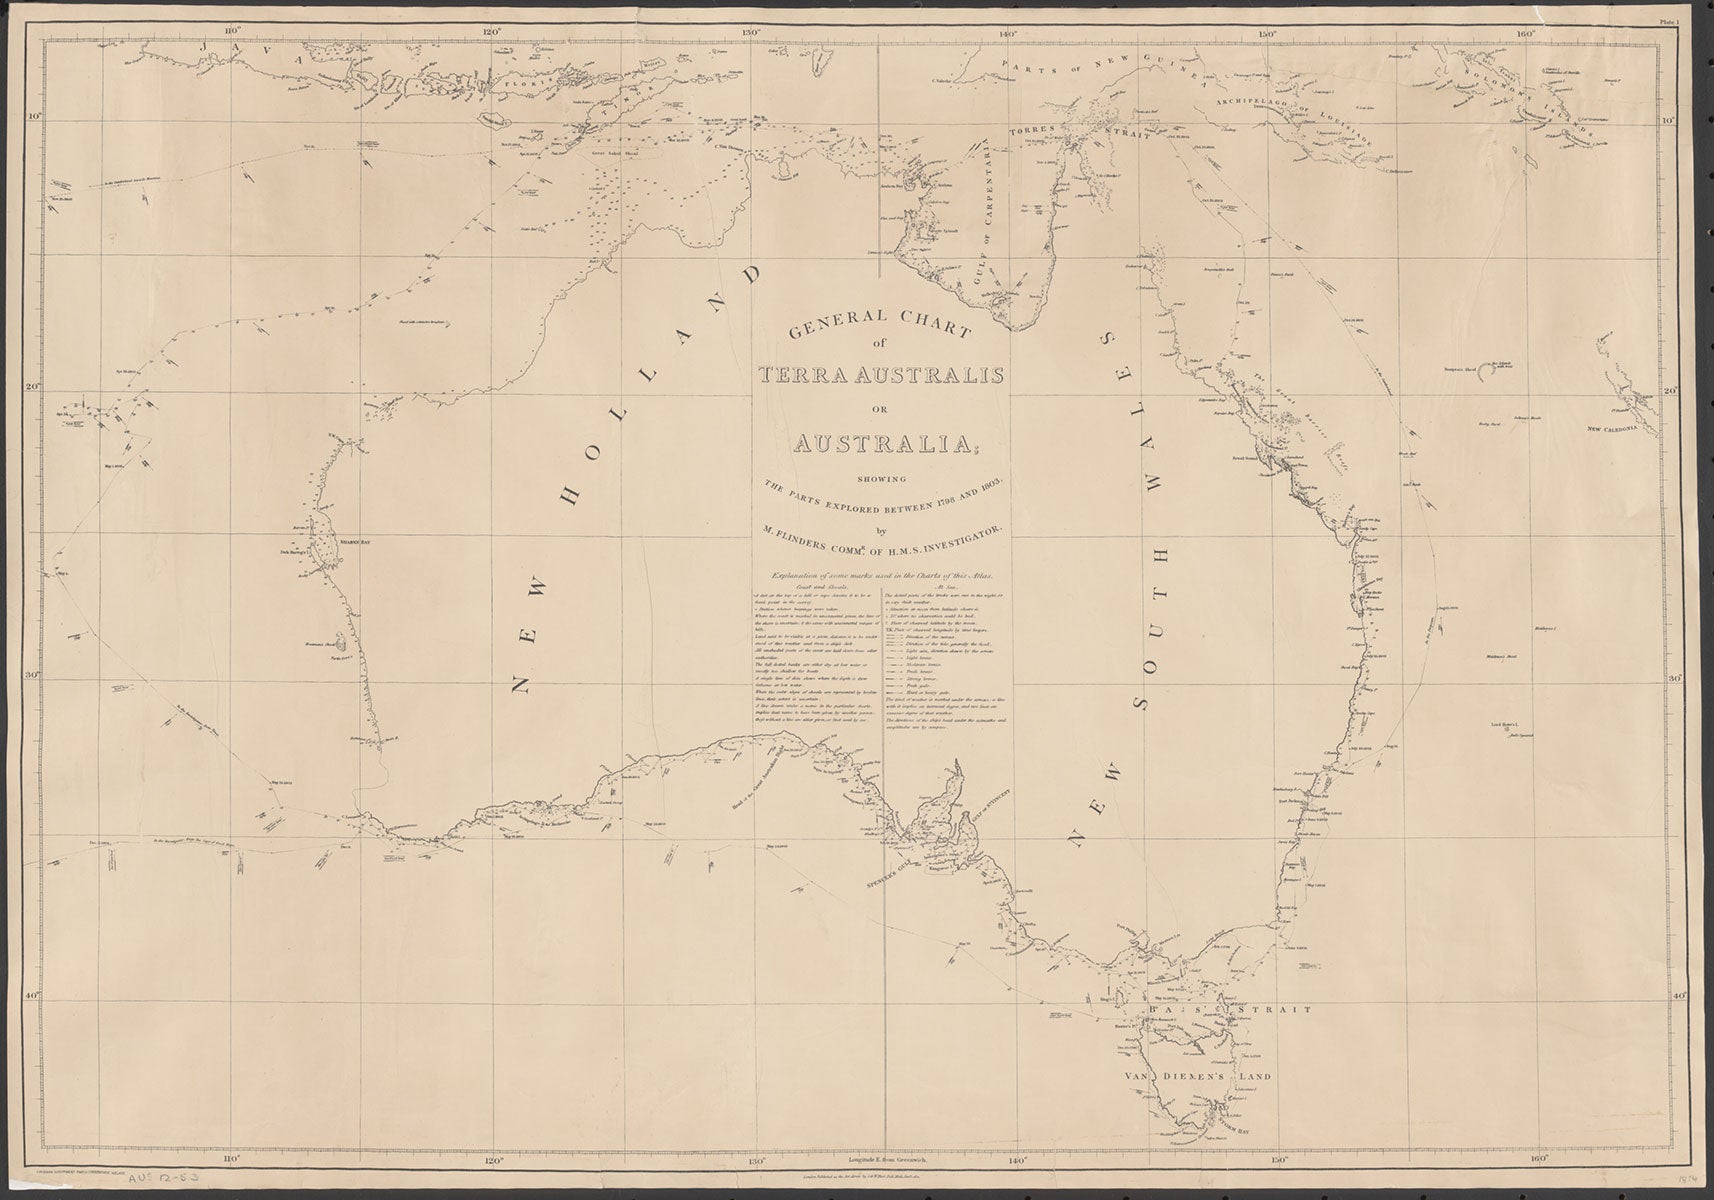 FLINDERS 1814 – General Chart of Terra Australis or Australia